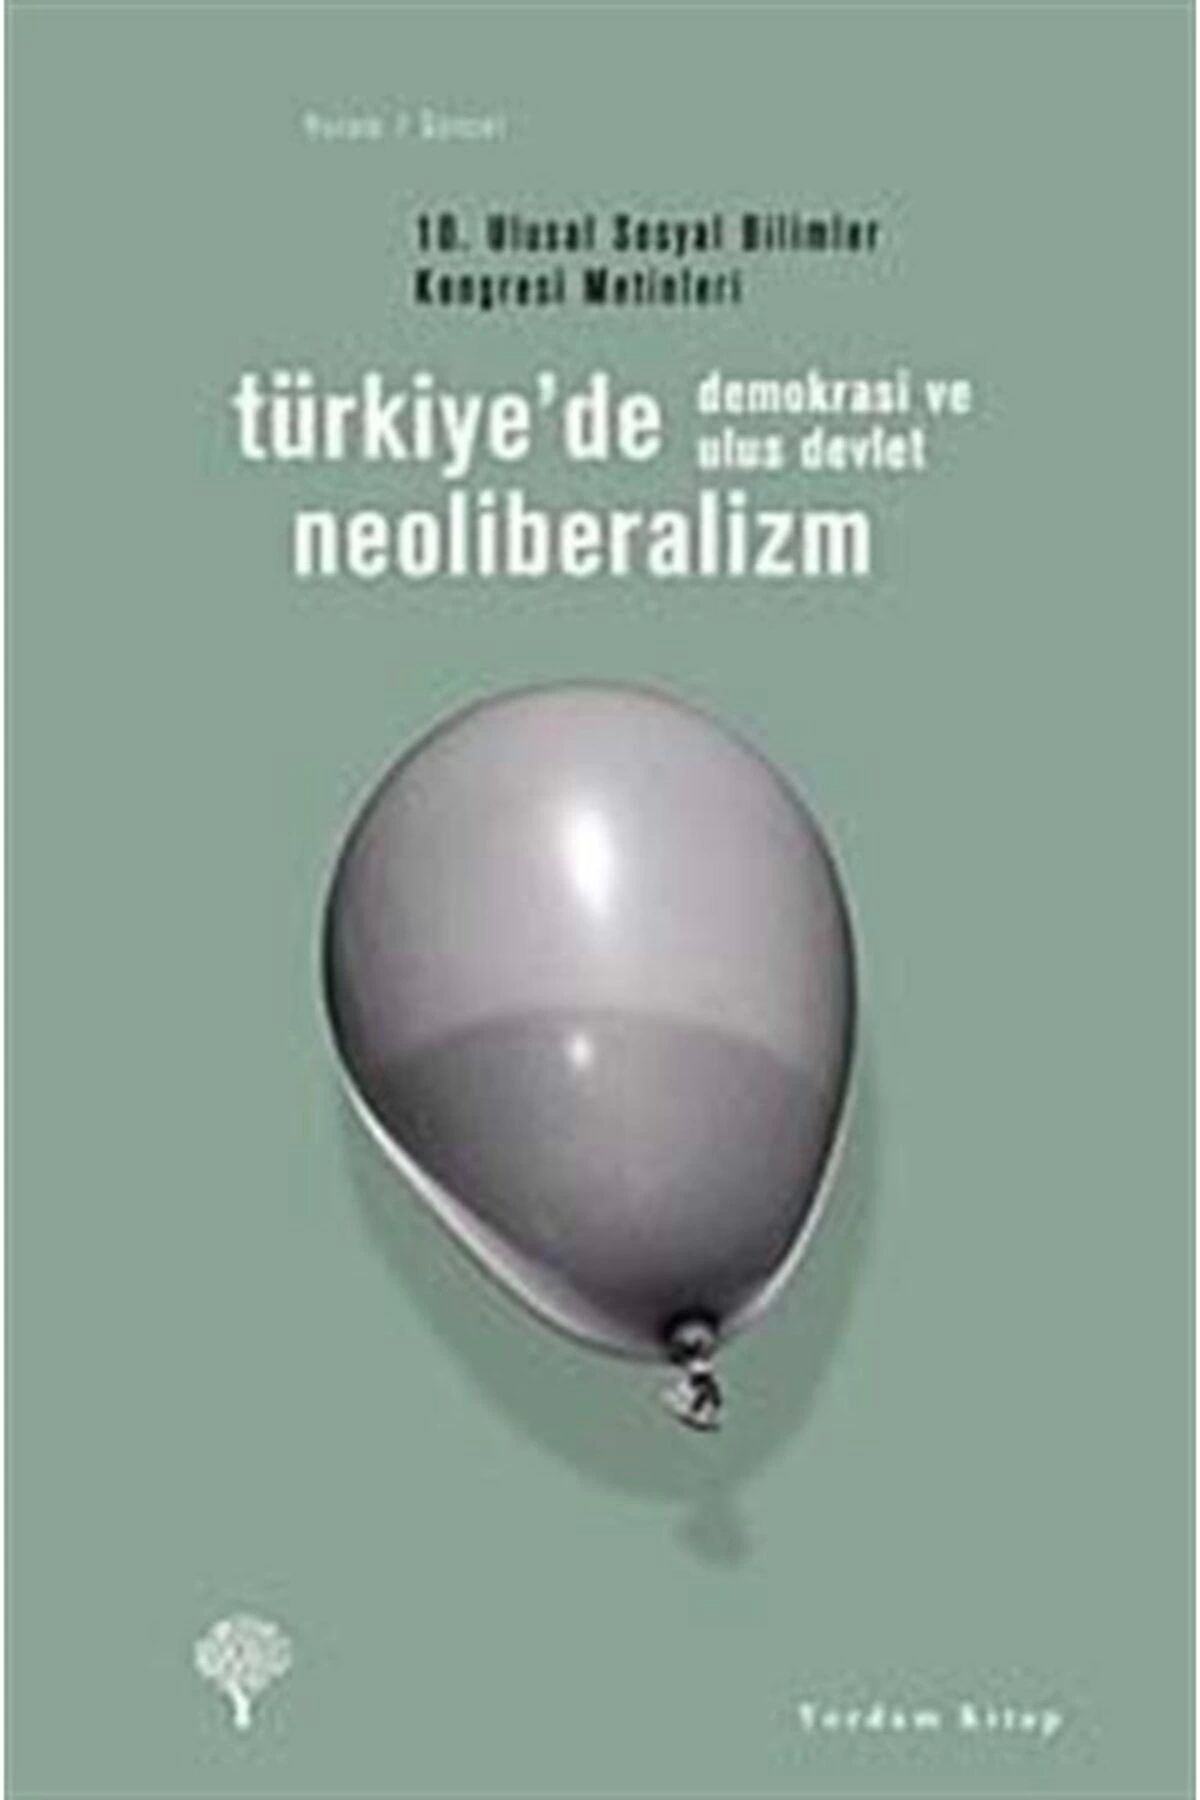 Yordam Kitap Türkiye'de Neoliberalizm, Demokrasi Ve Ulus Devlet & 10. Ulusal Sosyal Bilimler Kongresi Metinleri